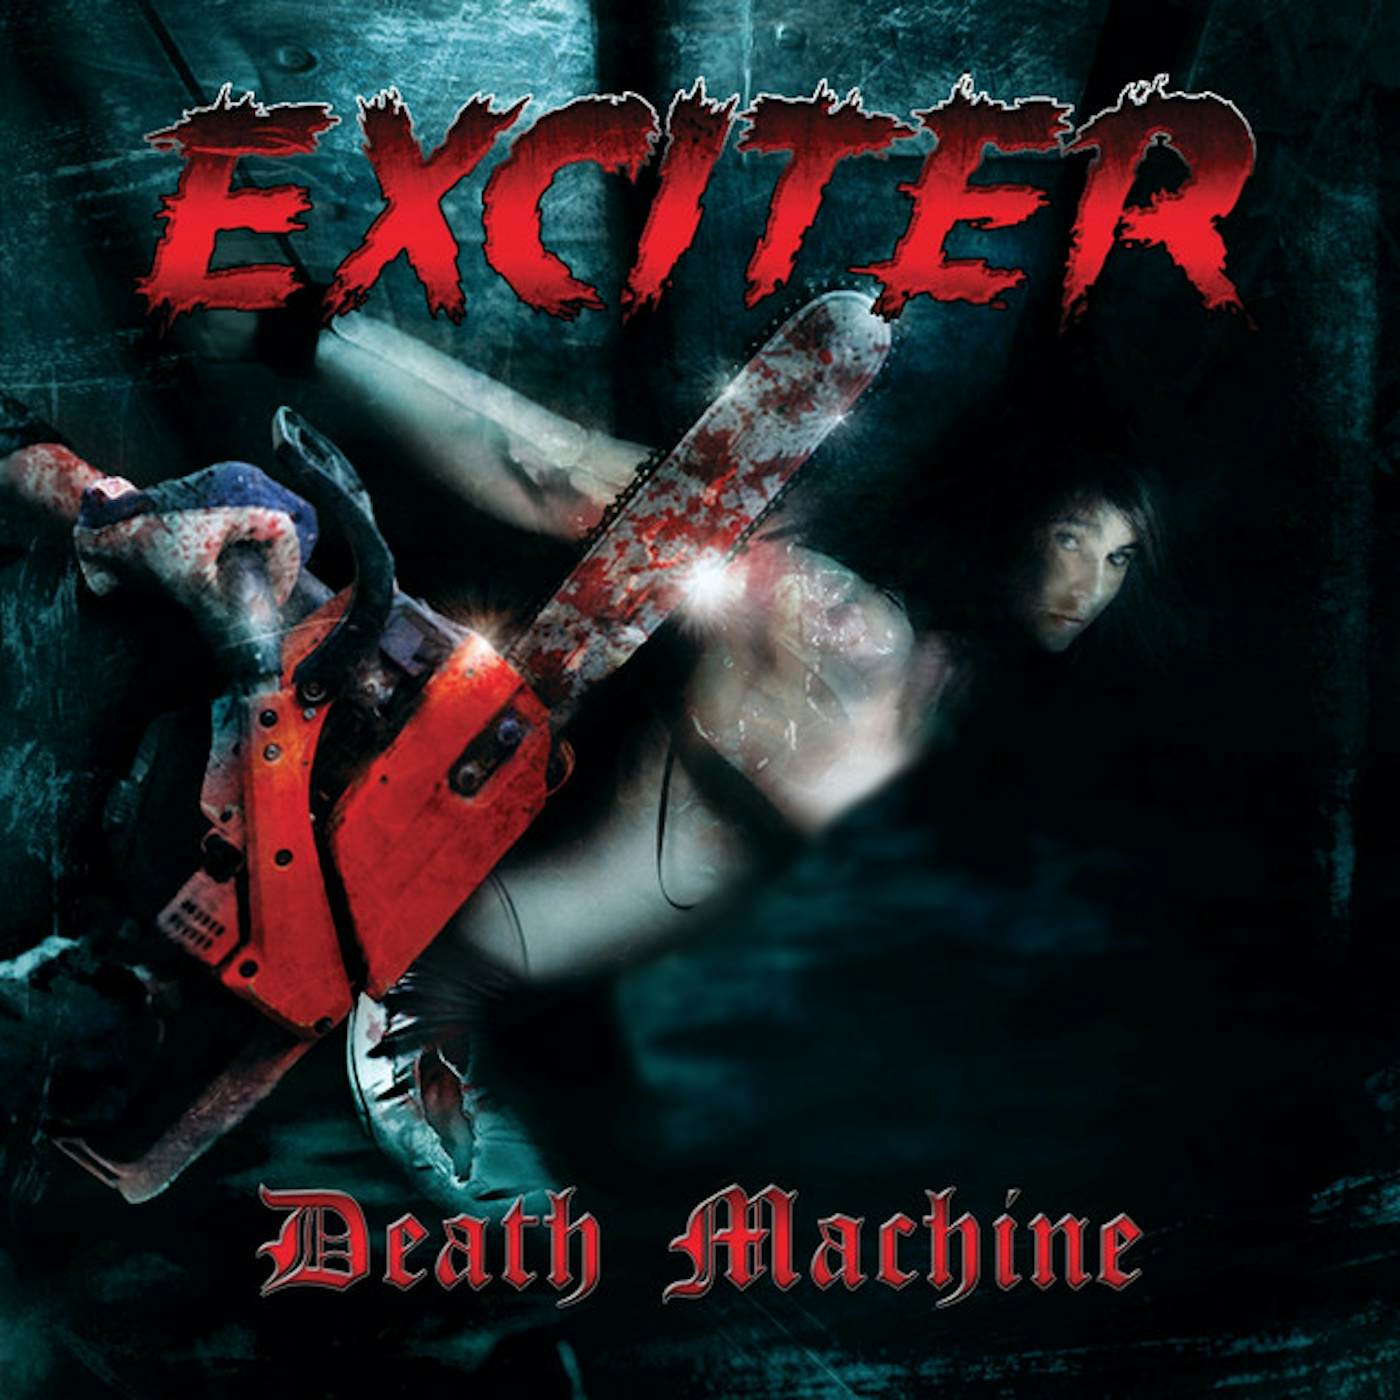 Exciter DEATH MACHINE CD